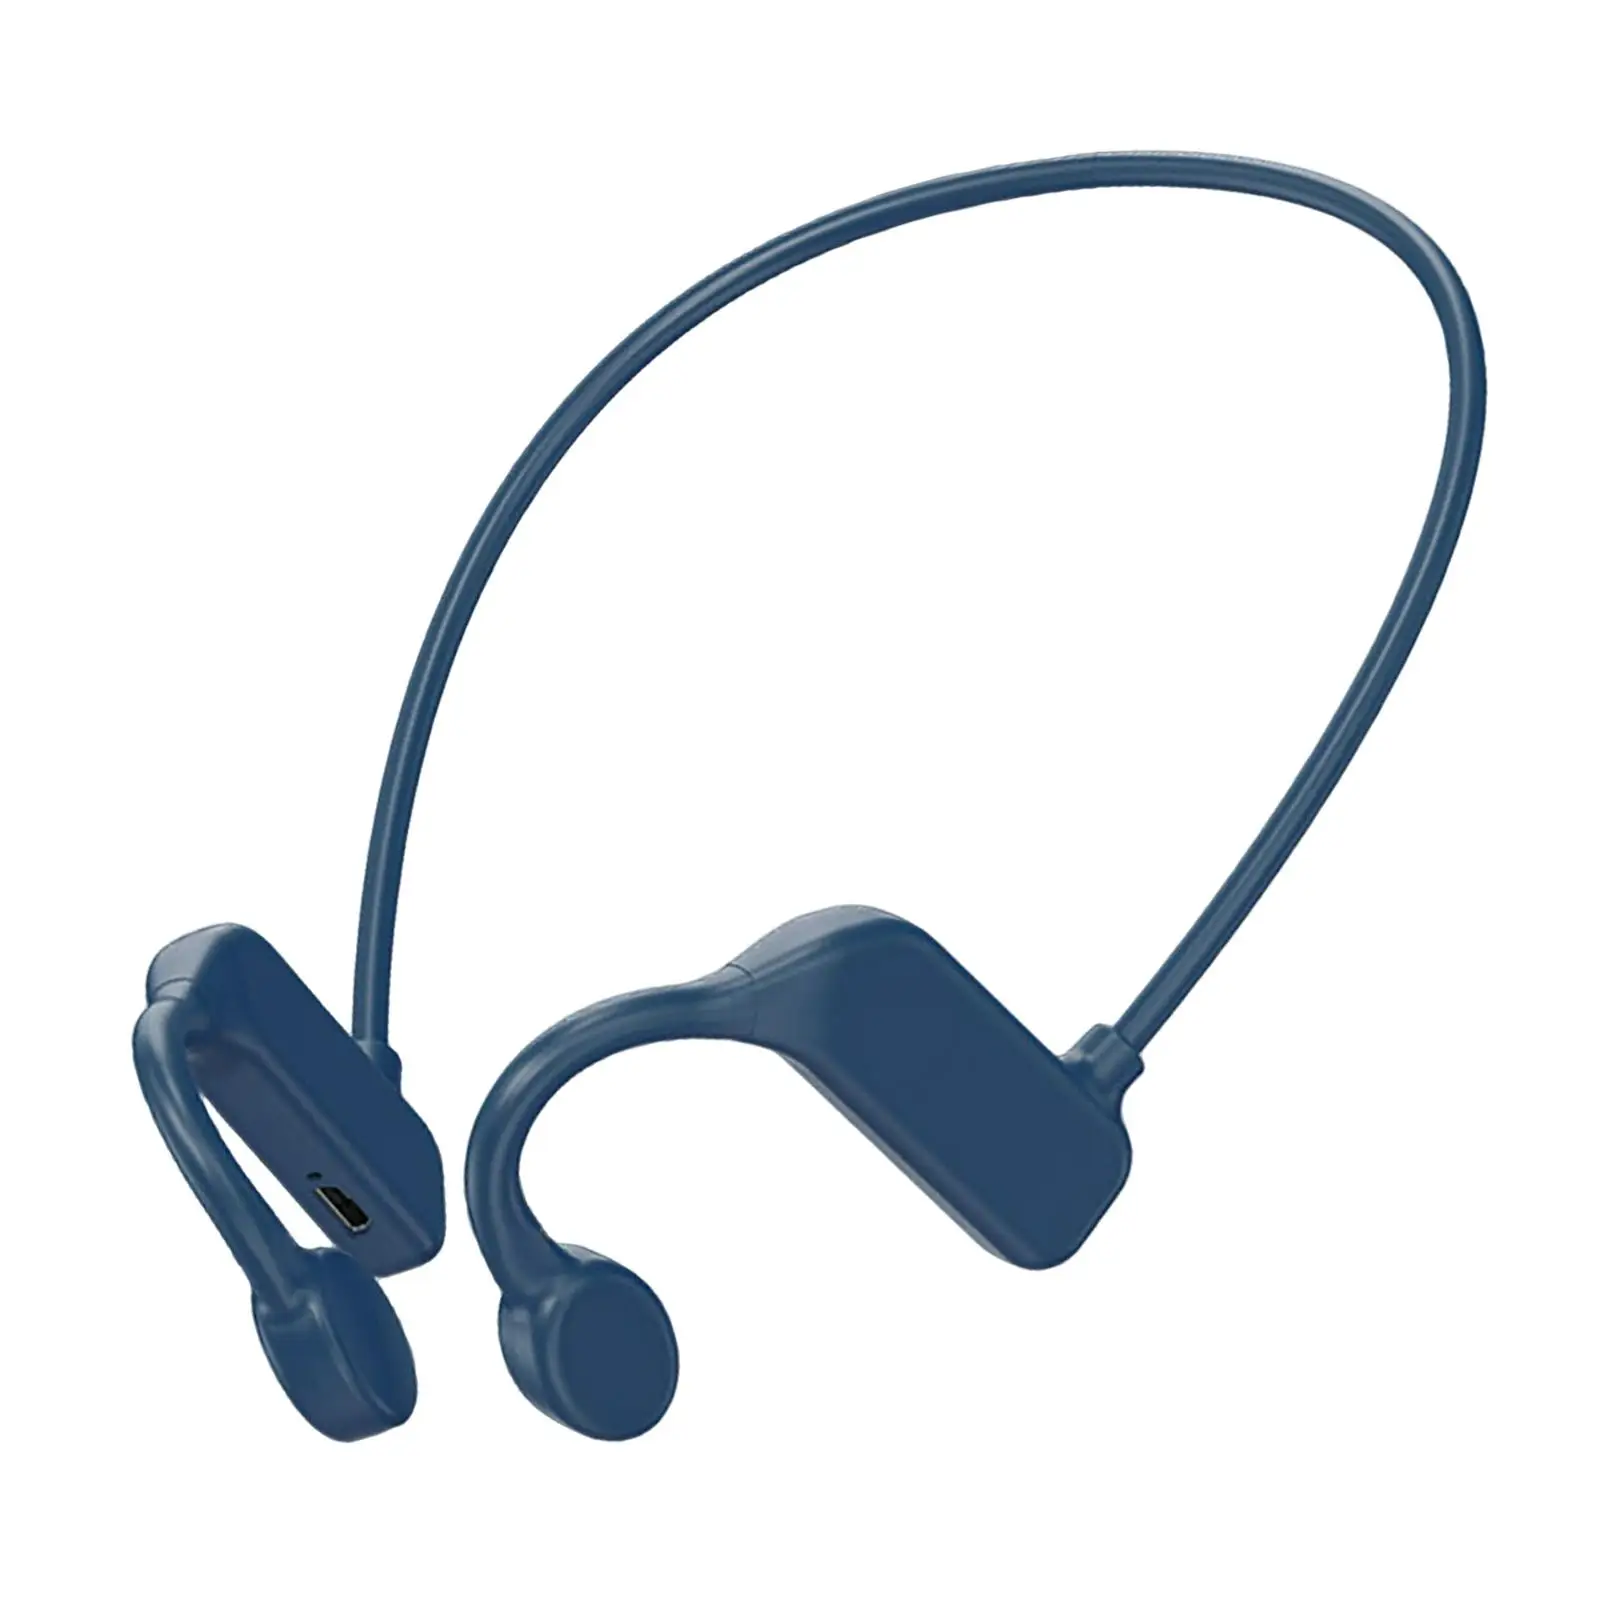 Open Ear Headphones Bluetooth Earphones Comfortable with Mic